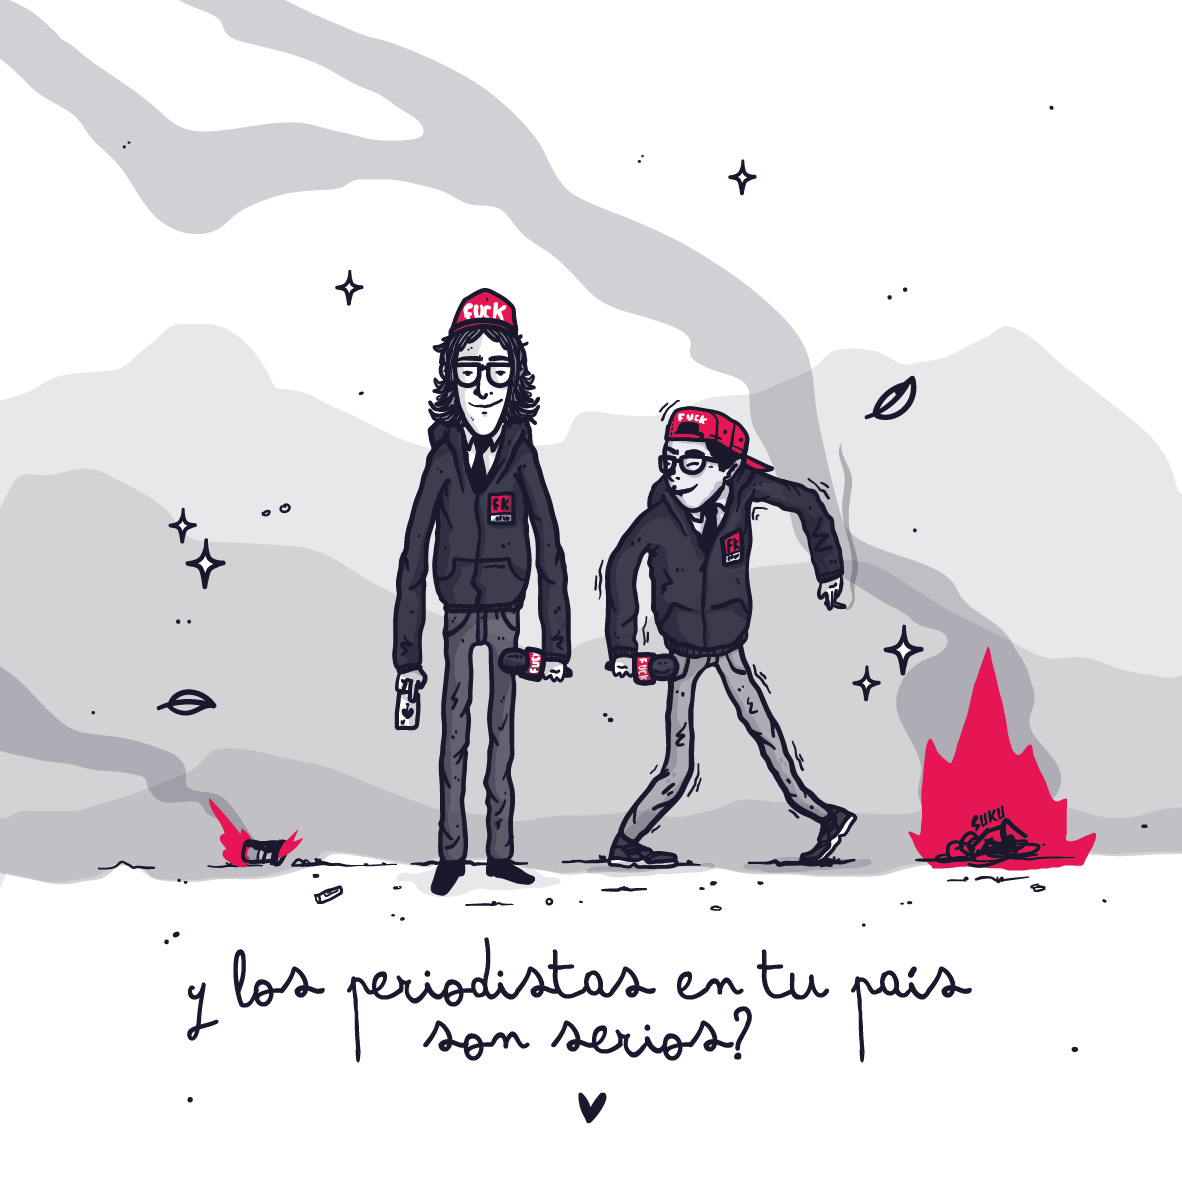 con animo de ofender ESMAD fuego ilustracion ilustration paronacionalcolombia Periodismo police riots